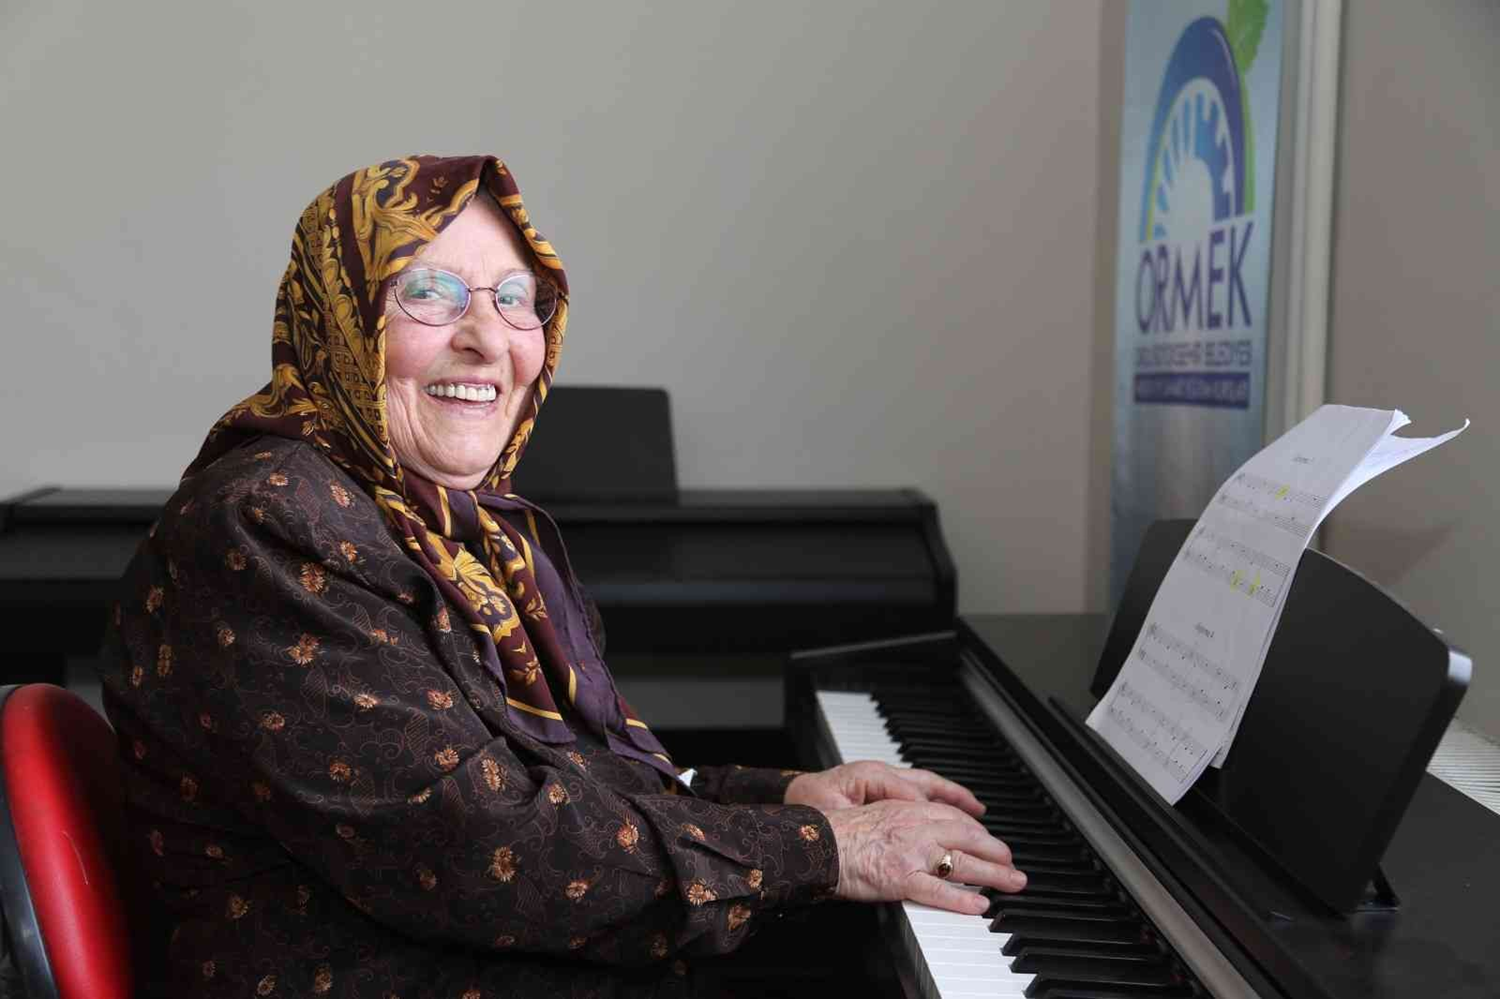 86 yandaki Nurten nine piyano kursuna balad: ocukluk hayalimi gerekletirdim